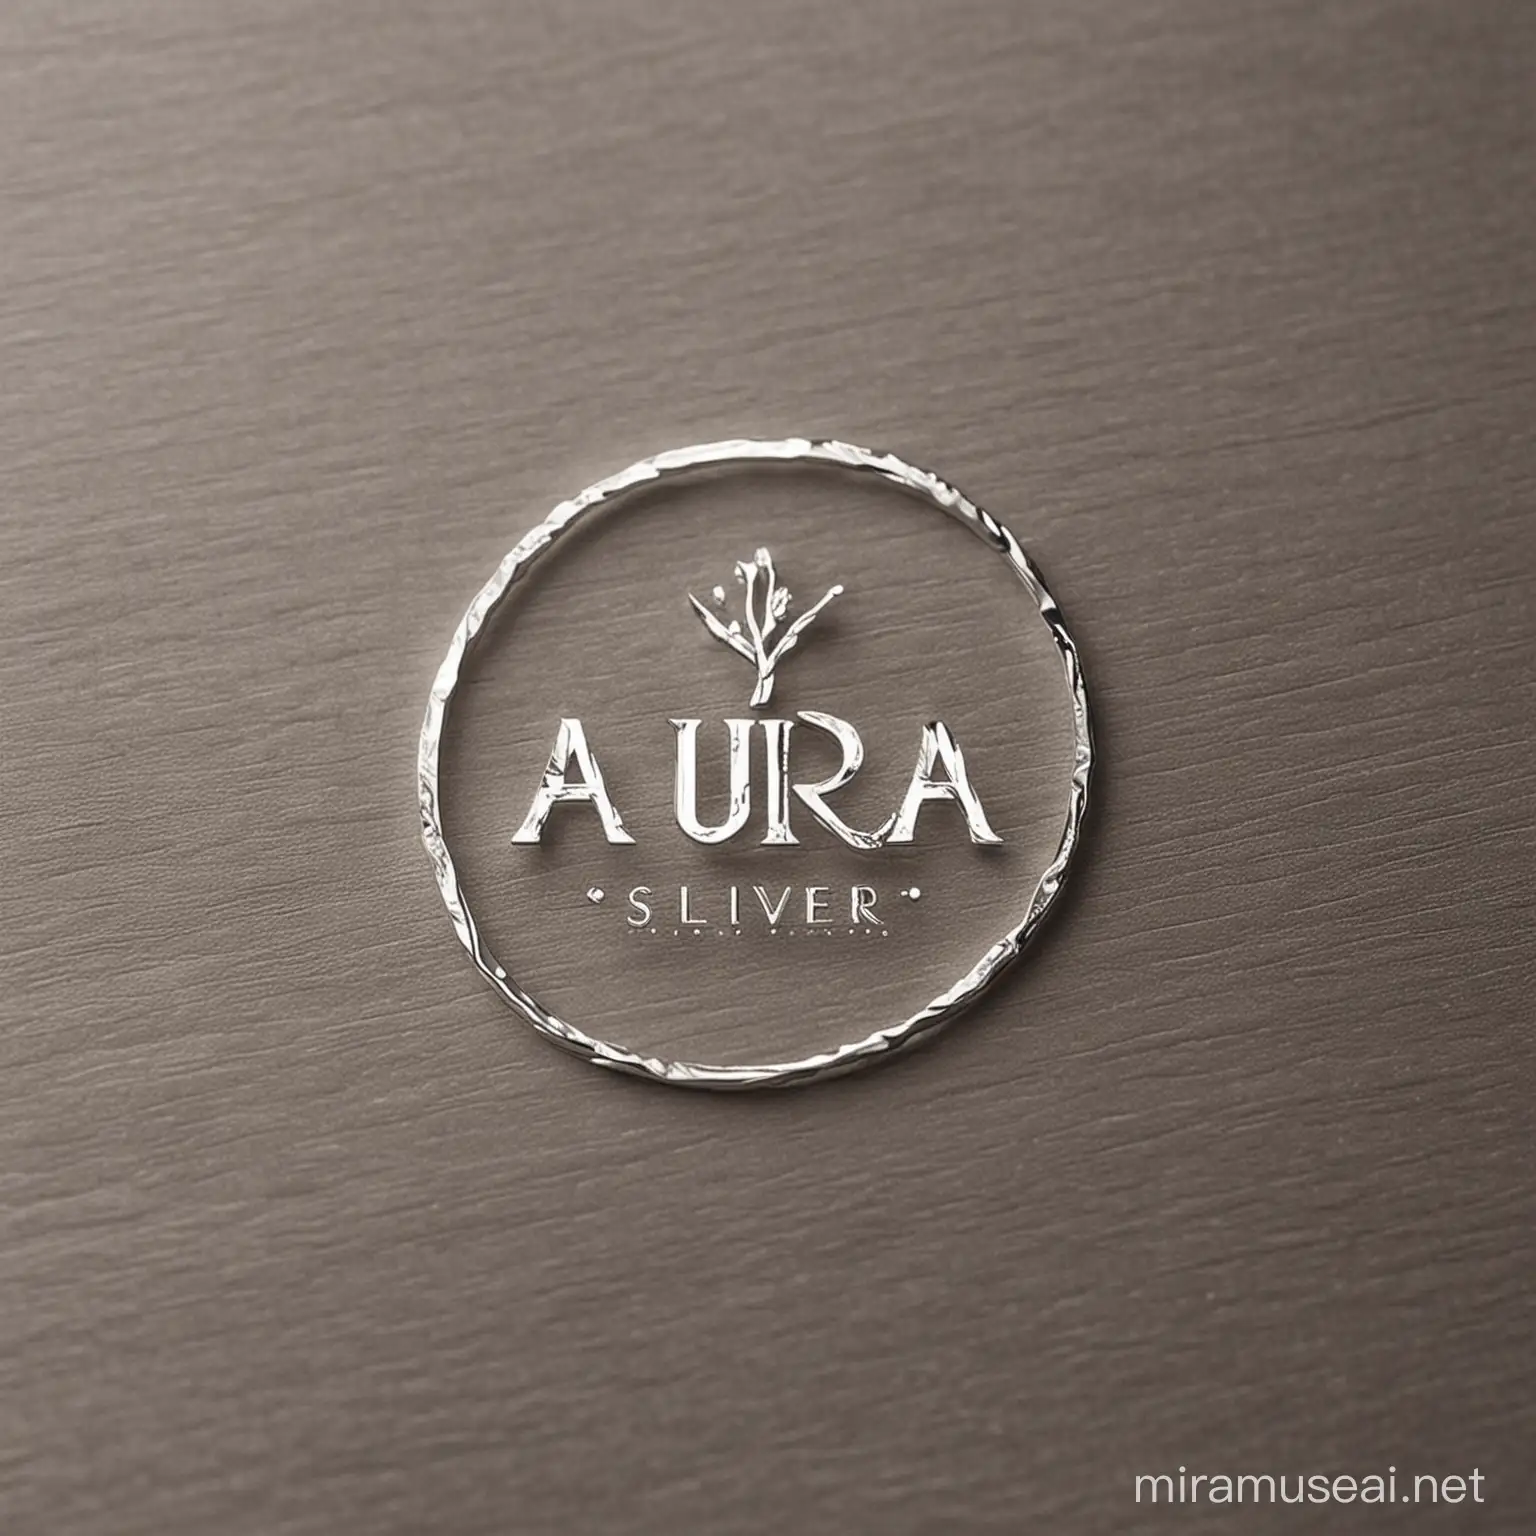 Elegant Aura Silver Brand Logo in Subtle Tones